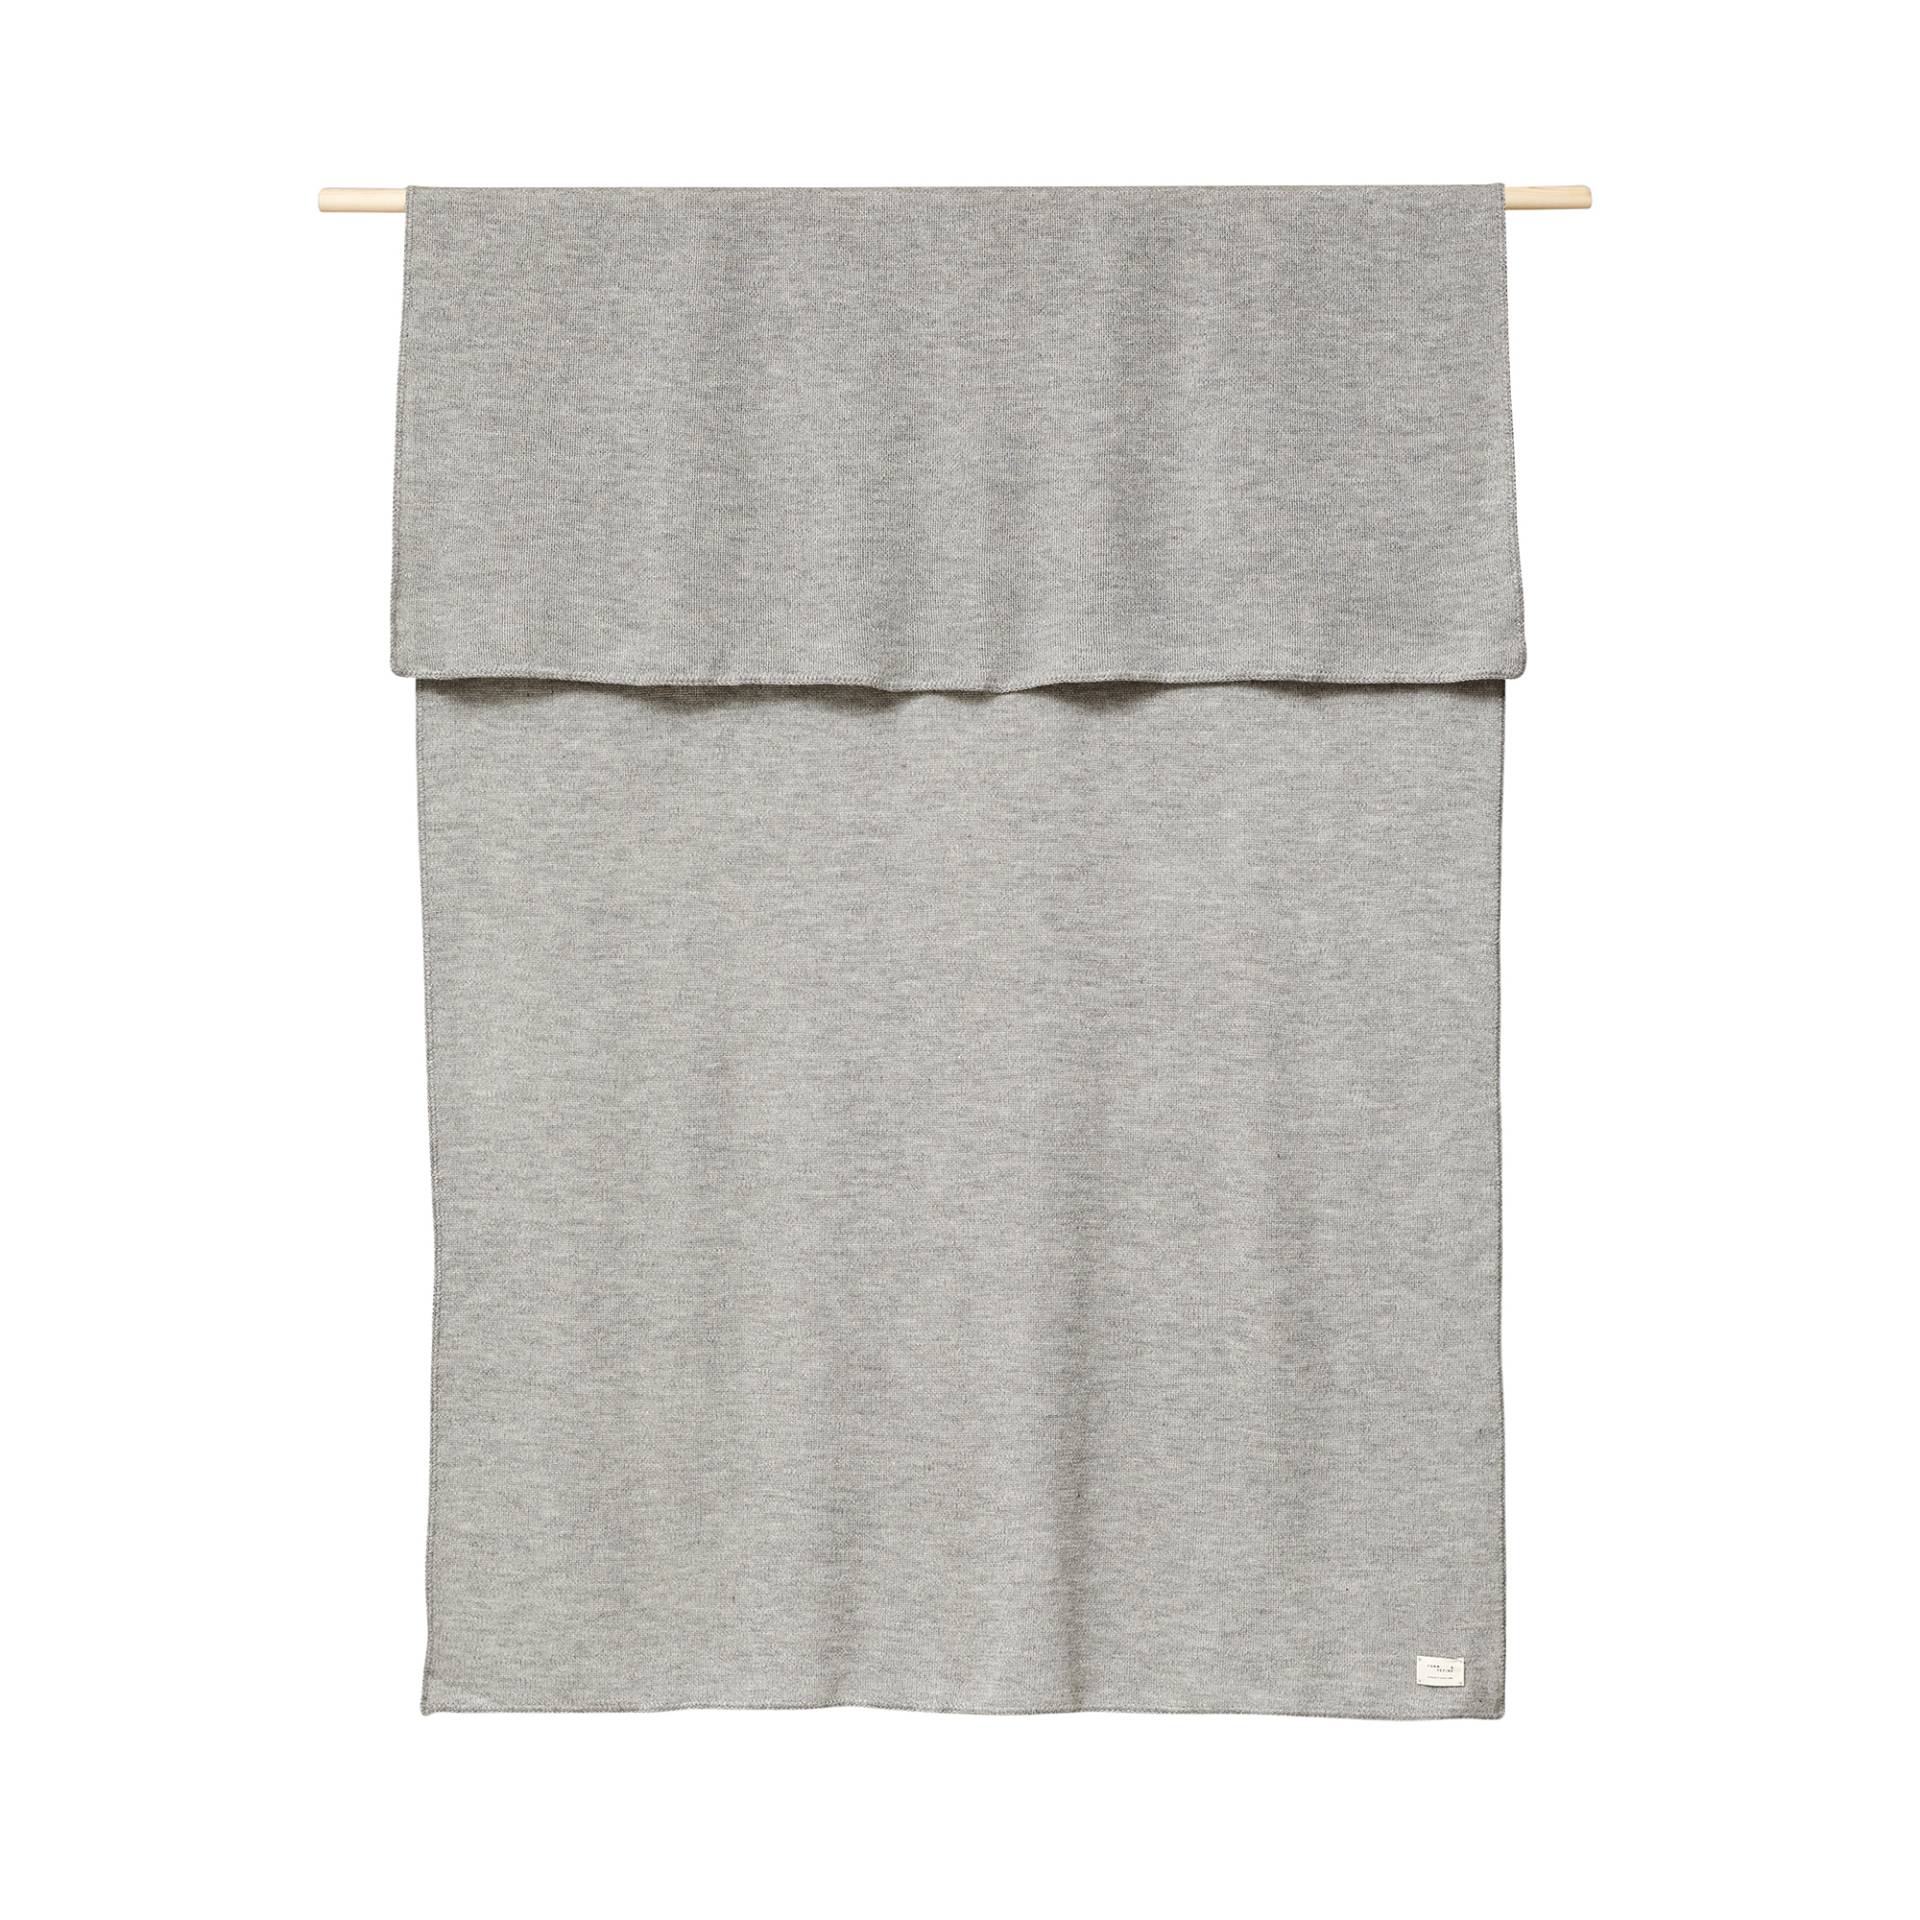 Form & Refine - Aymara Decke Grau 190x130cm - grau/einfarbig/LxH 190x130cm von Form & Refine